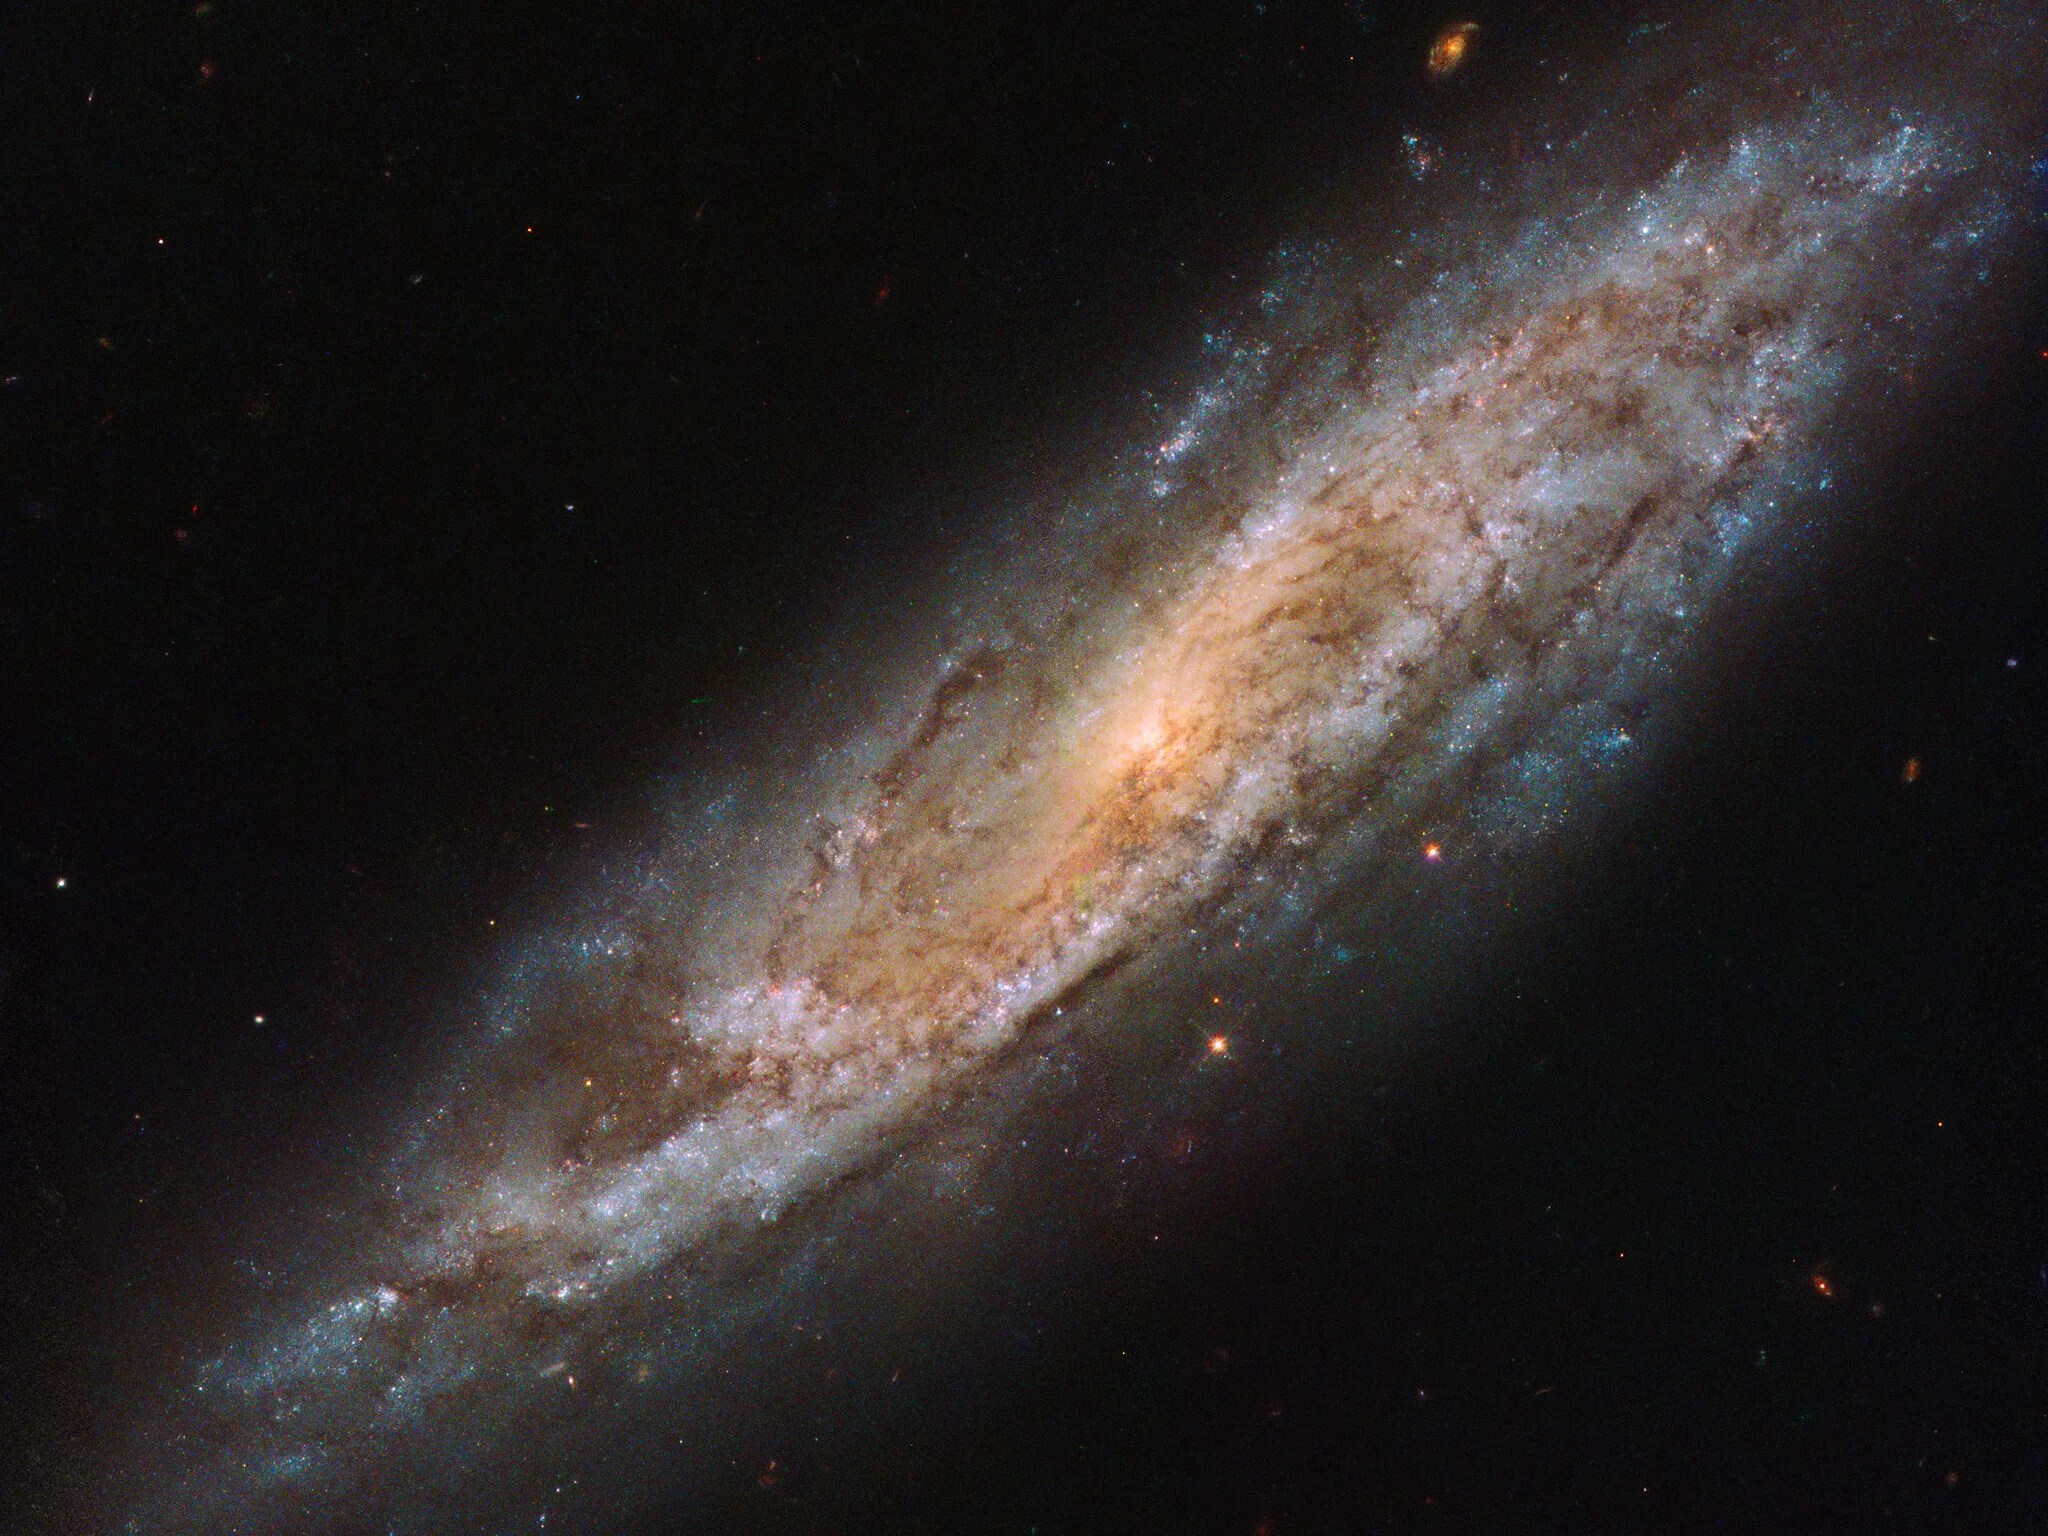 Bright spiral galaxy, seen at an angle.